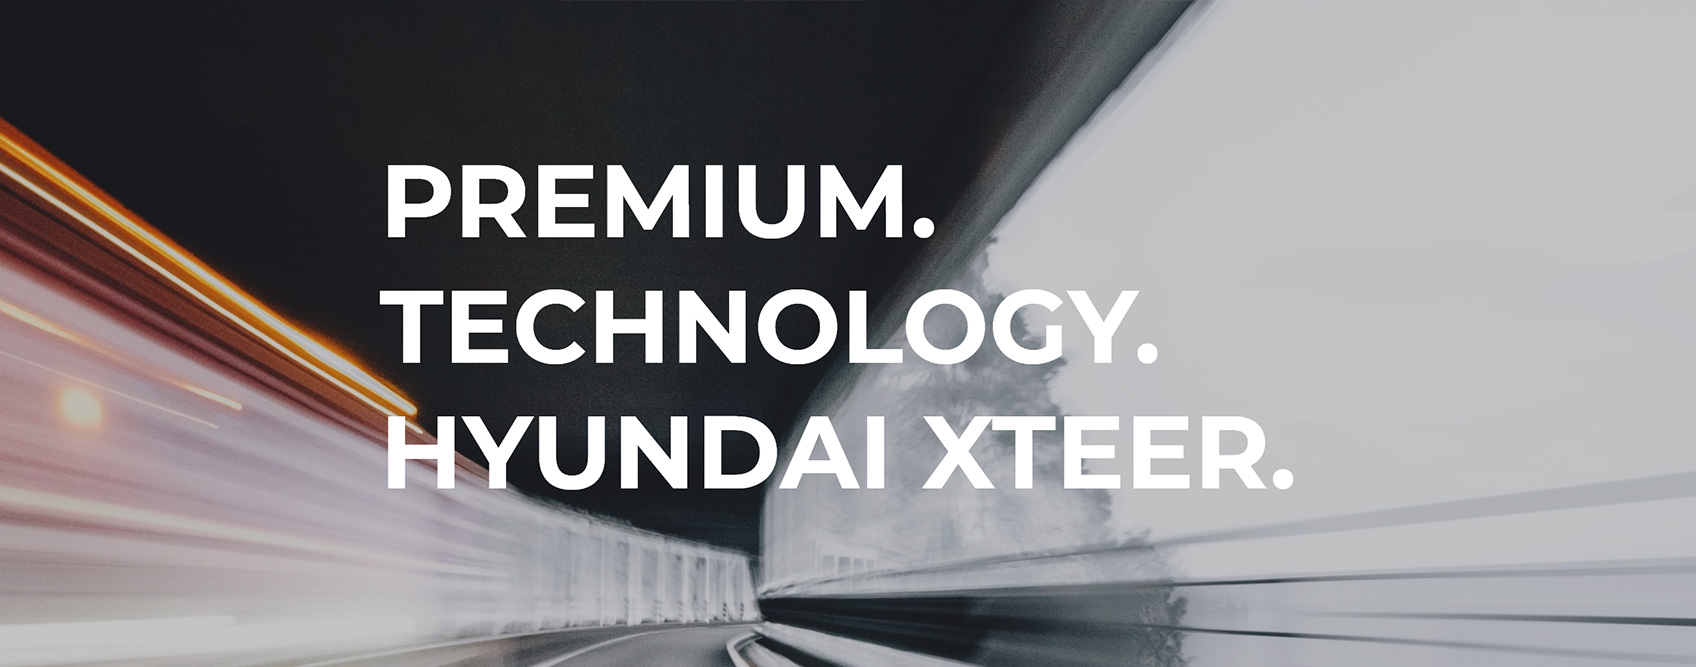 Hyundai Oilbank Xteer Website Renewal